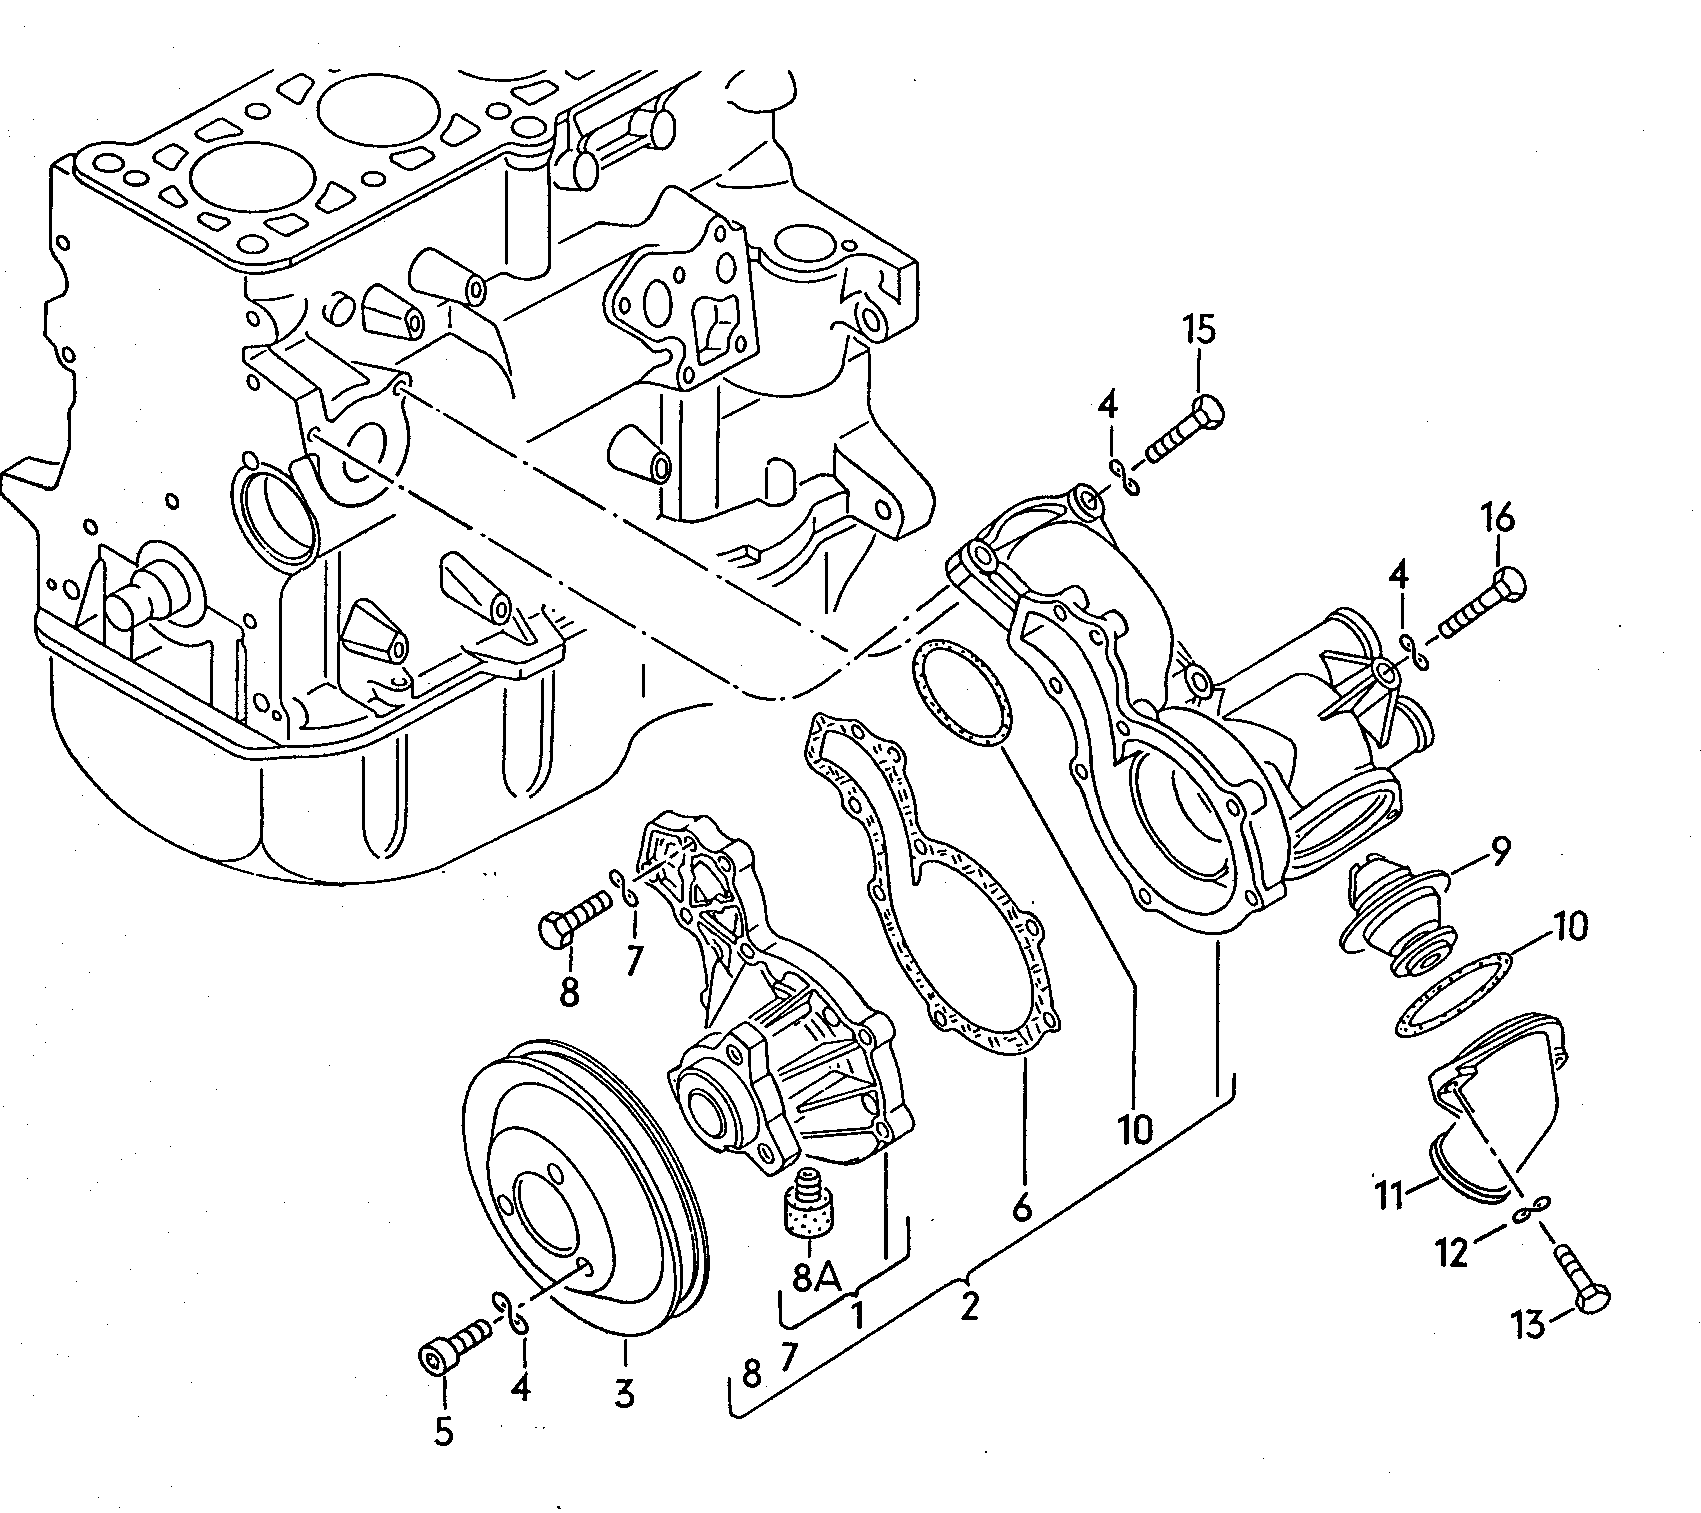 Coolant pump 1.6ltr. - Audi 5000 - a50